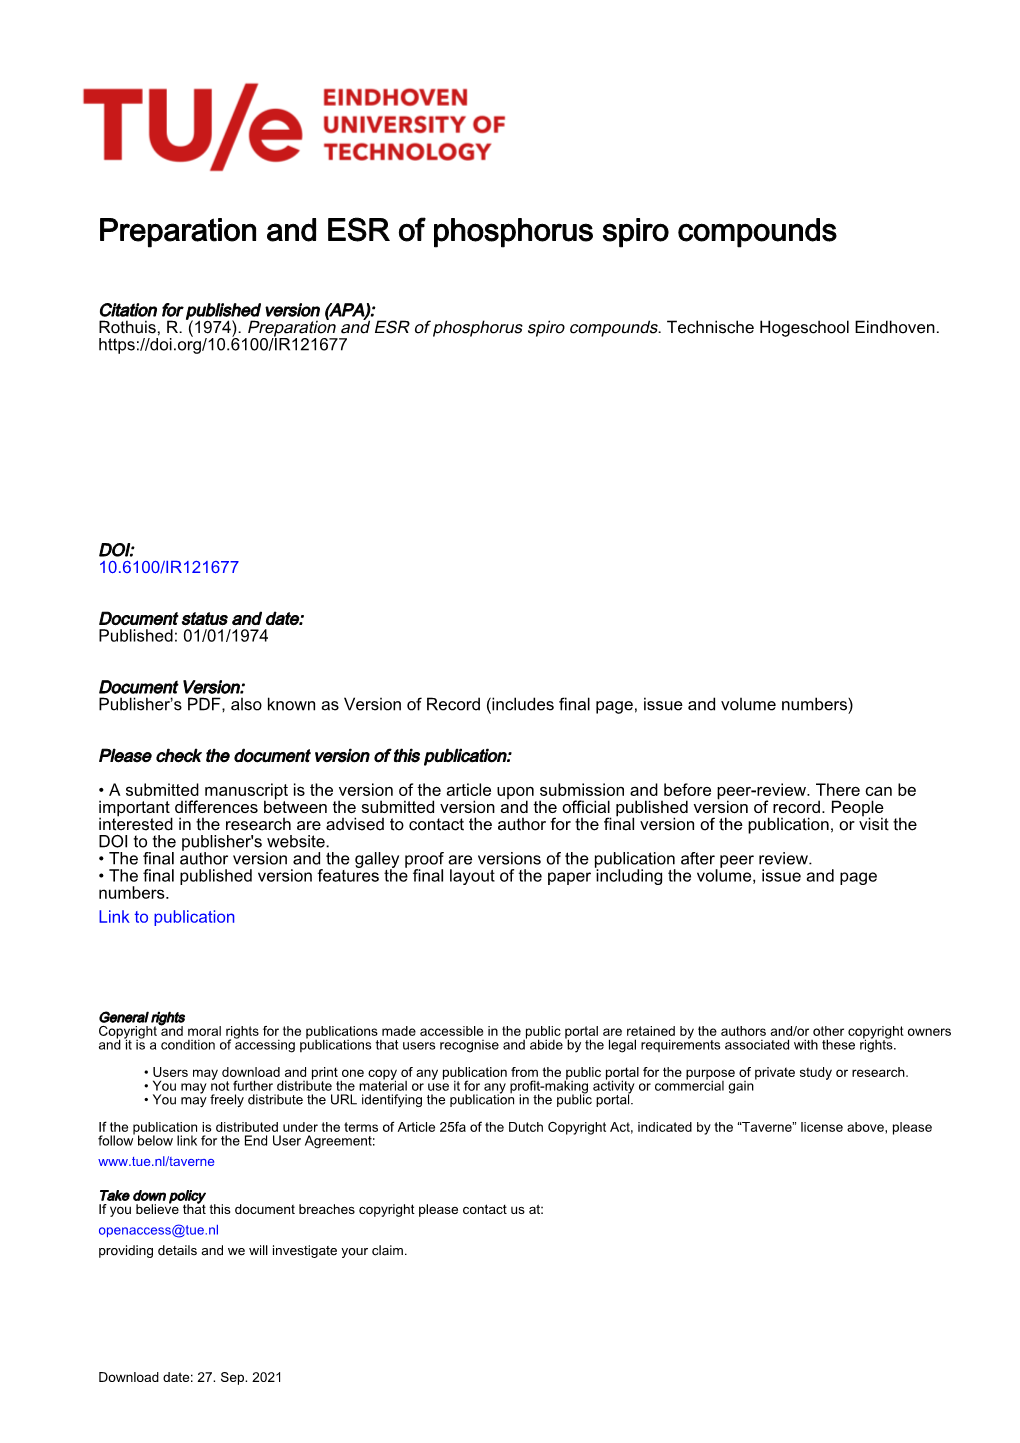 Preparation and ESR of Phosphorus Spiro Compounds